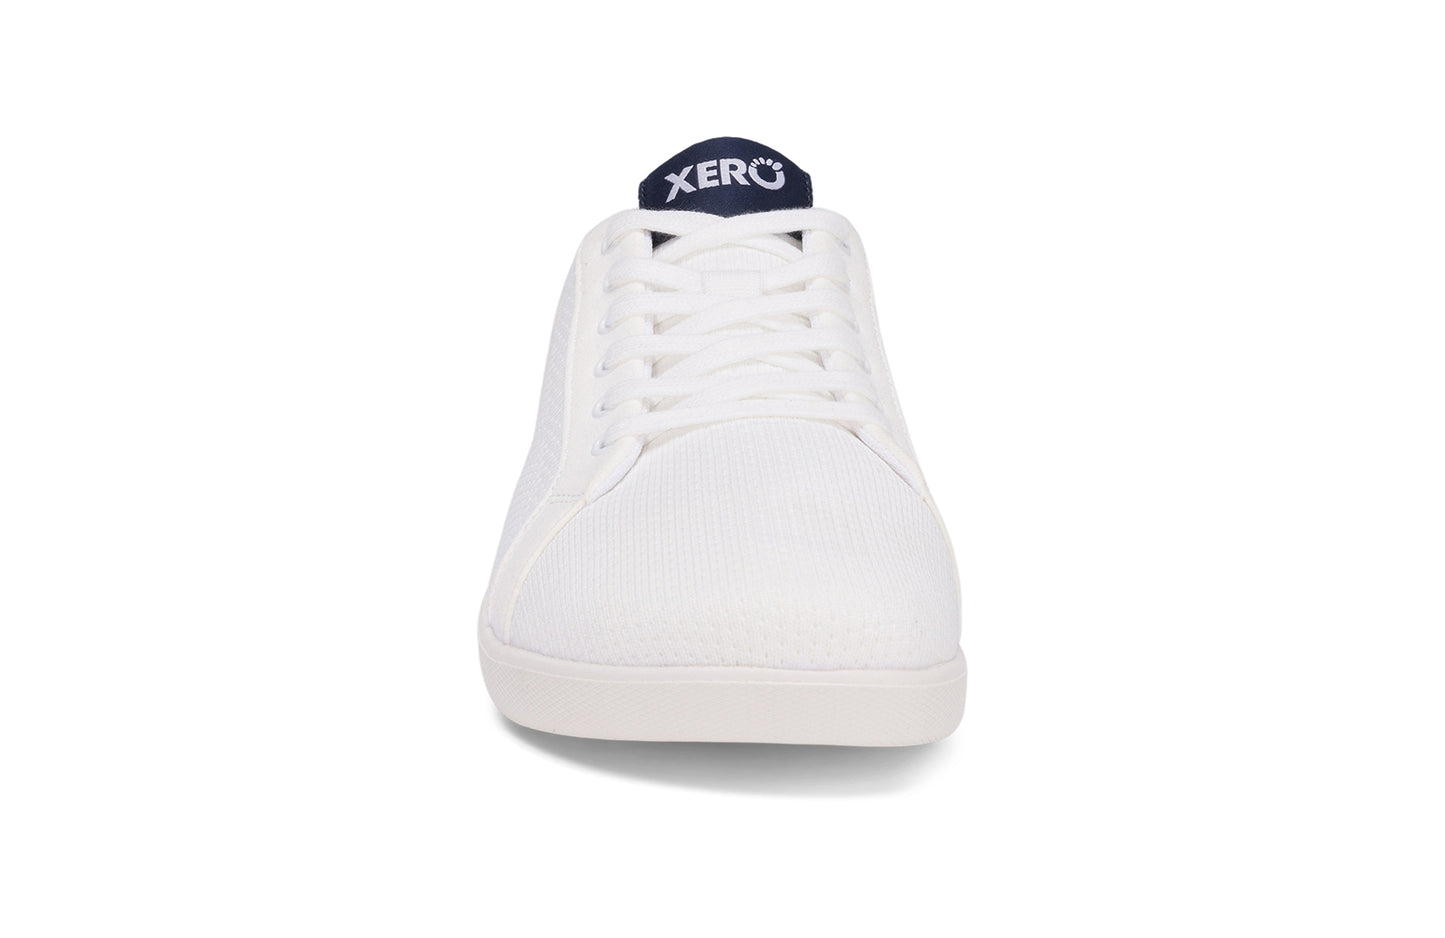 Xero Shoes - Dillon - White - Men's